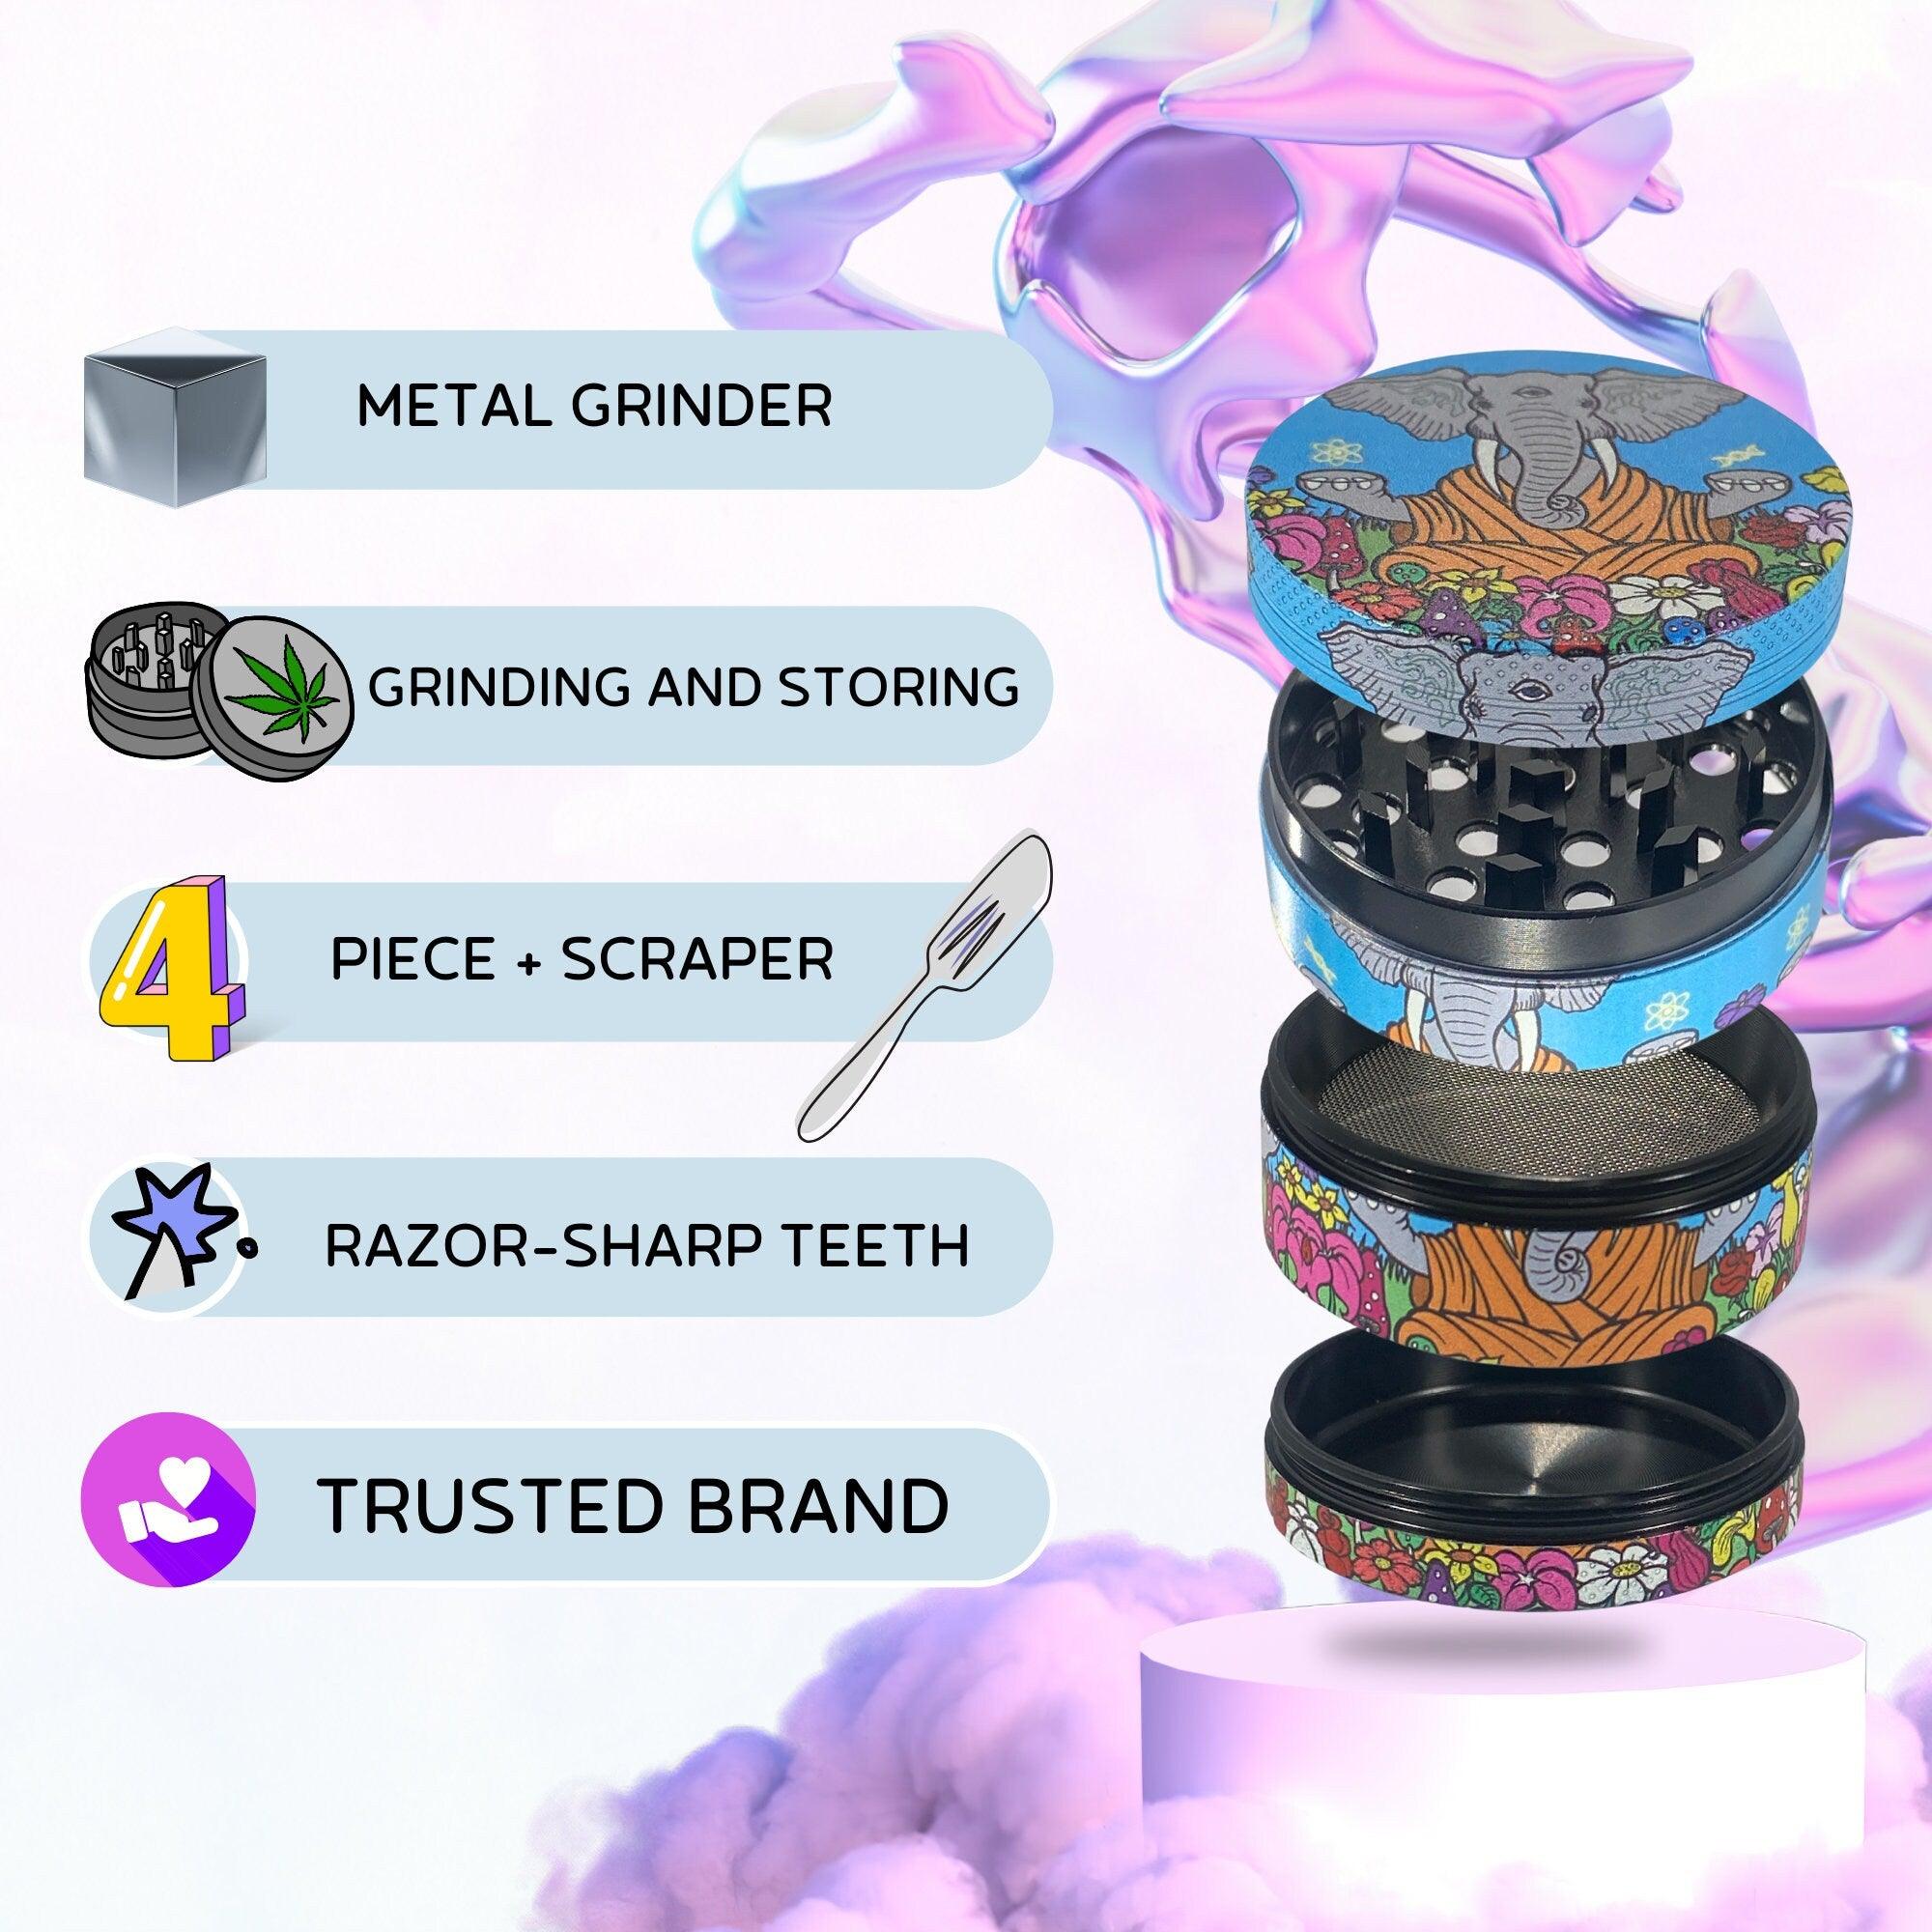 Weed Grinder | Elephant Cute, marijuana grinders, weed accessories, 4 piece grinder, metal grinder, cannabis, Pink Psychedelic Trippy Girly